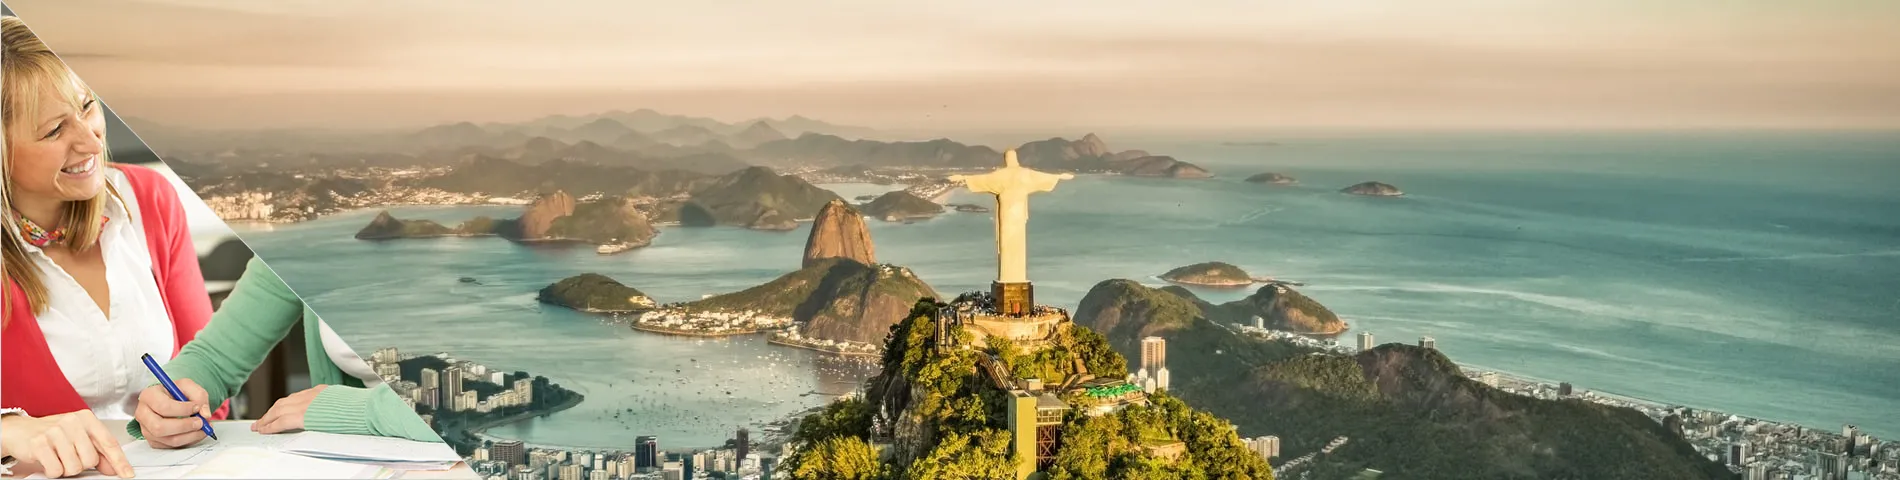 Rio de Janeiro - Studujte a žijte u svého učitele